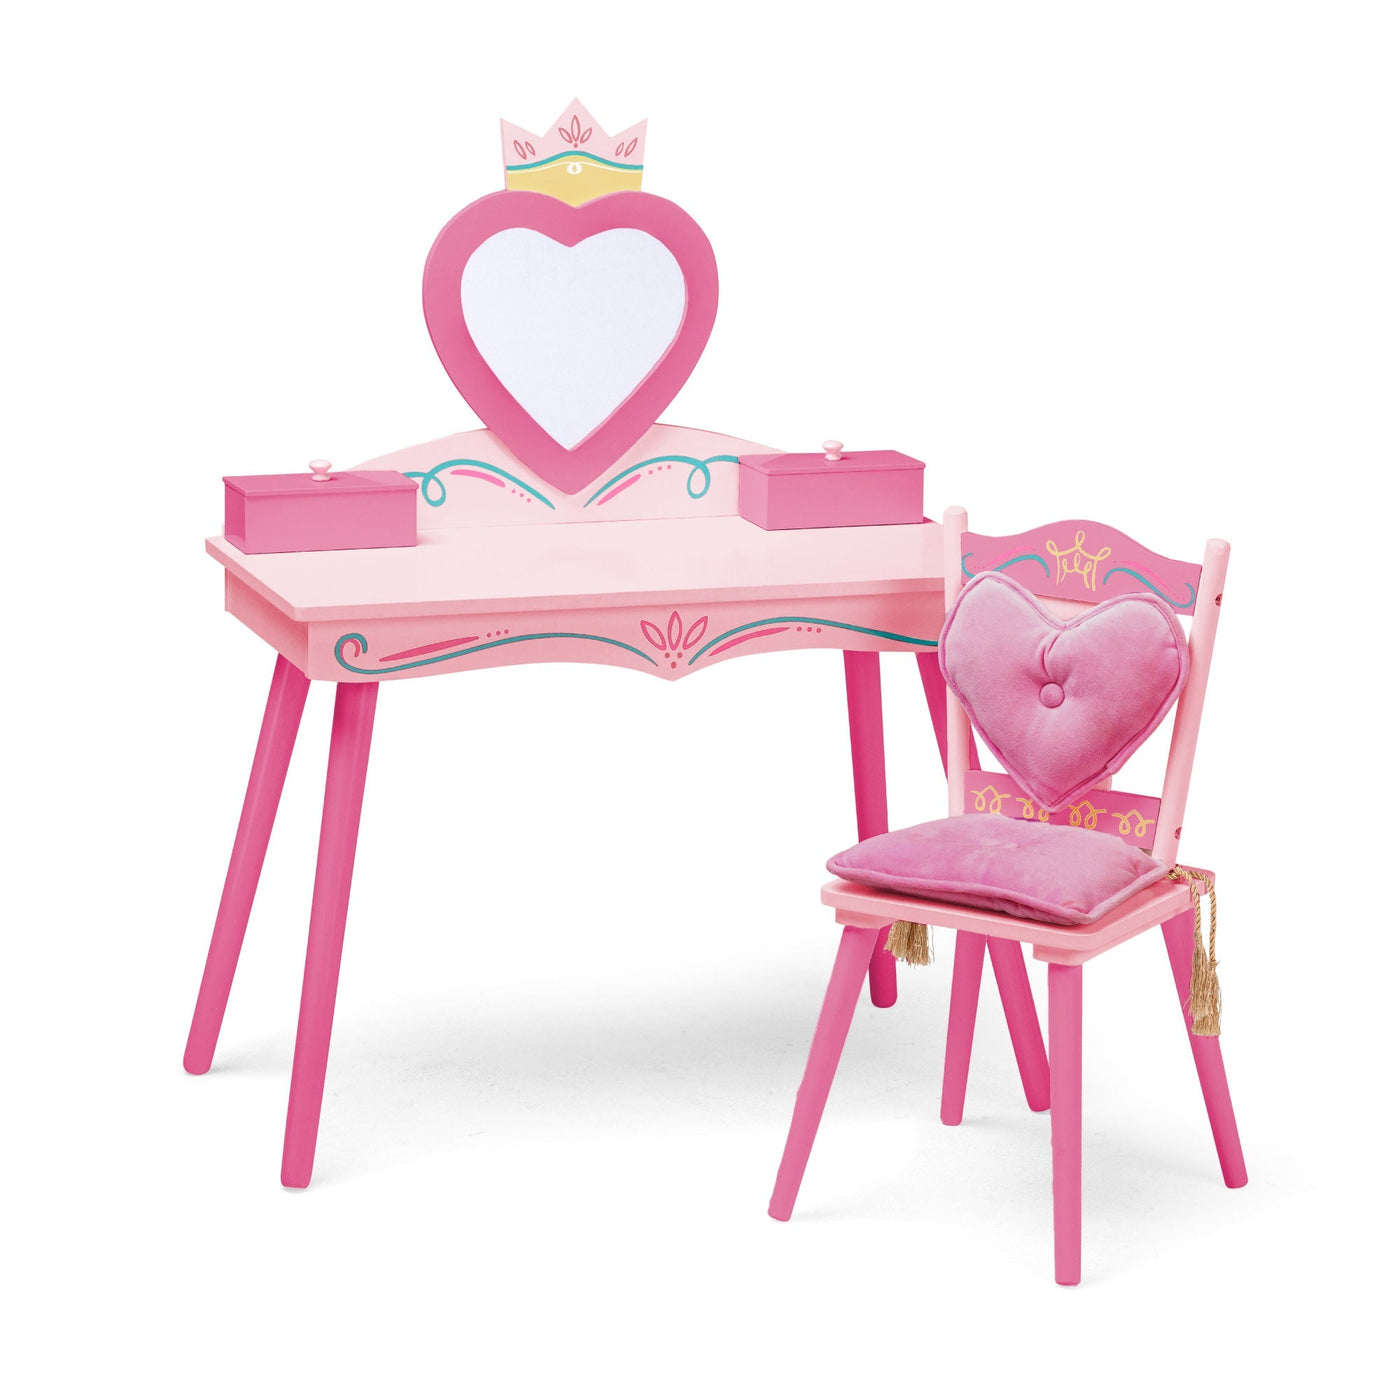 Princess Vanity Table & Chair Set - Pink